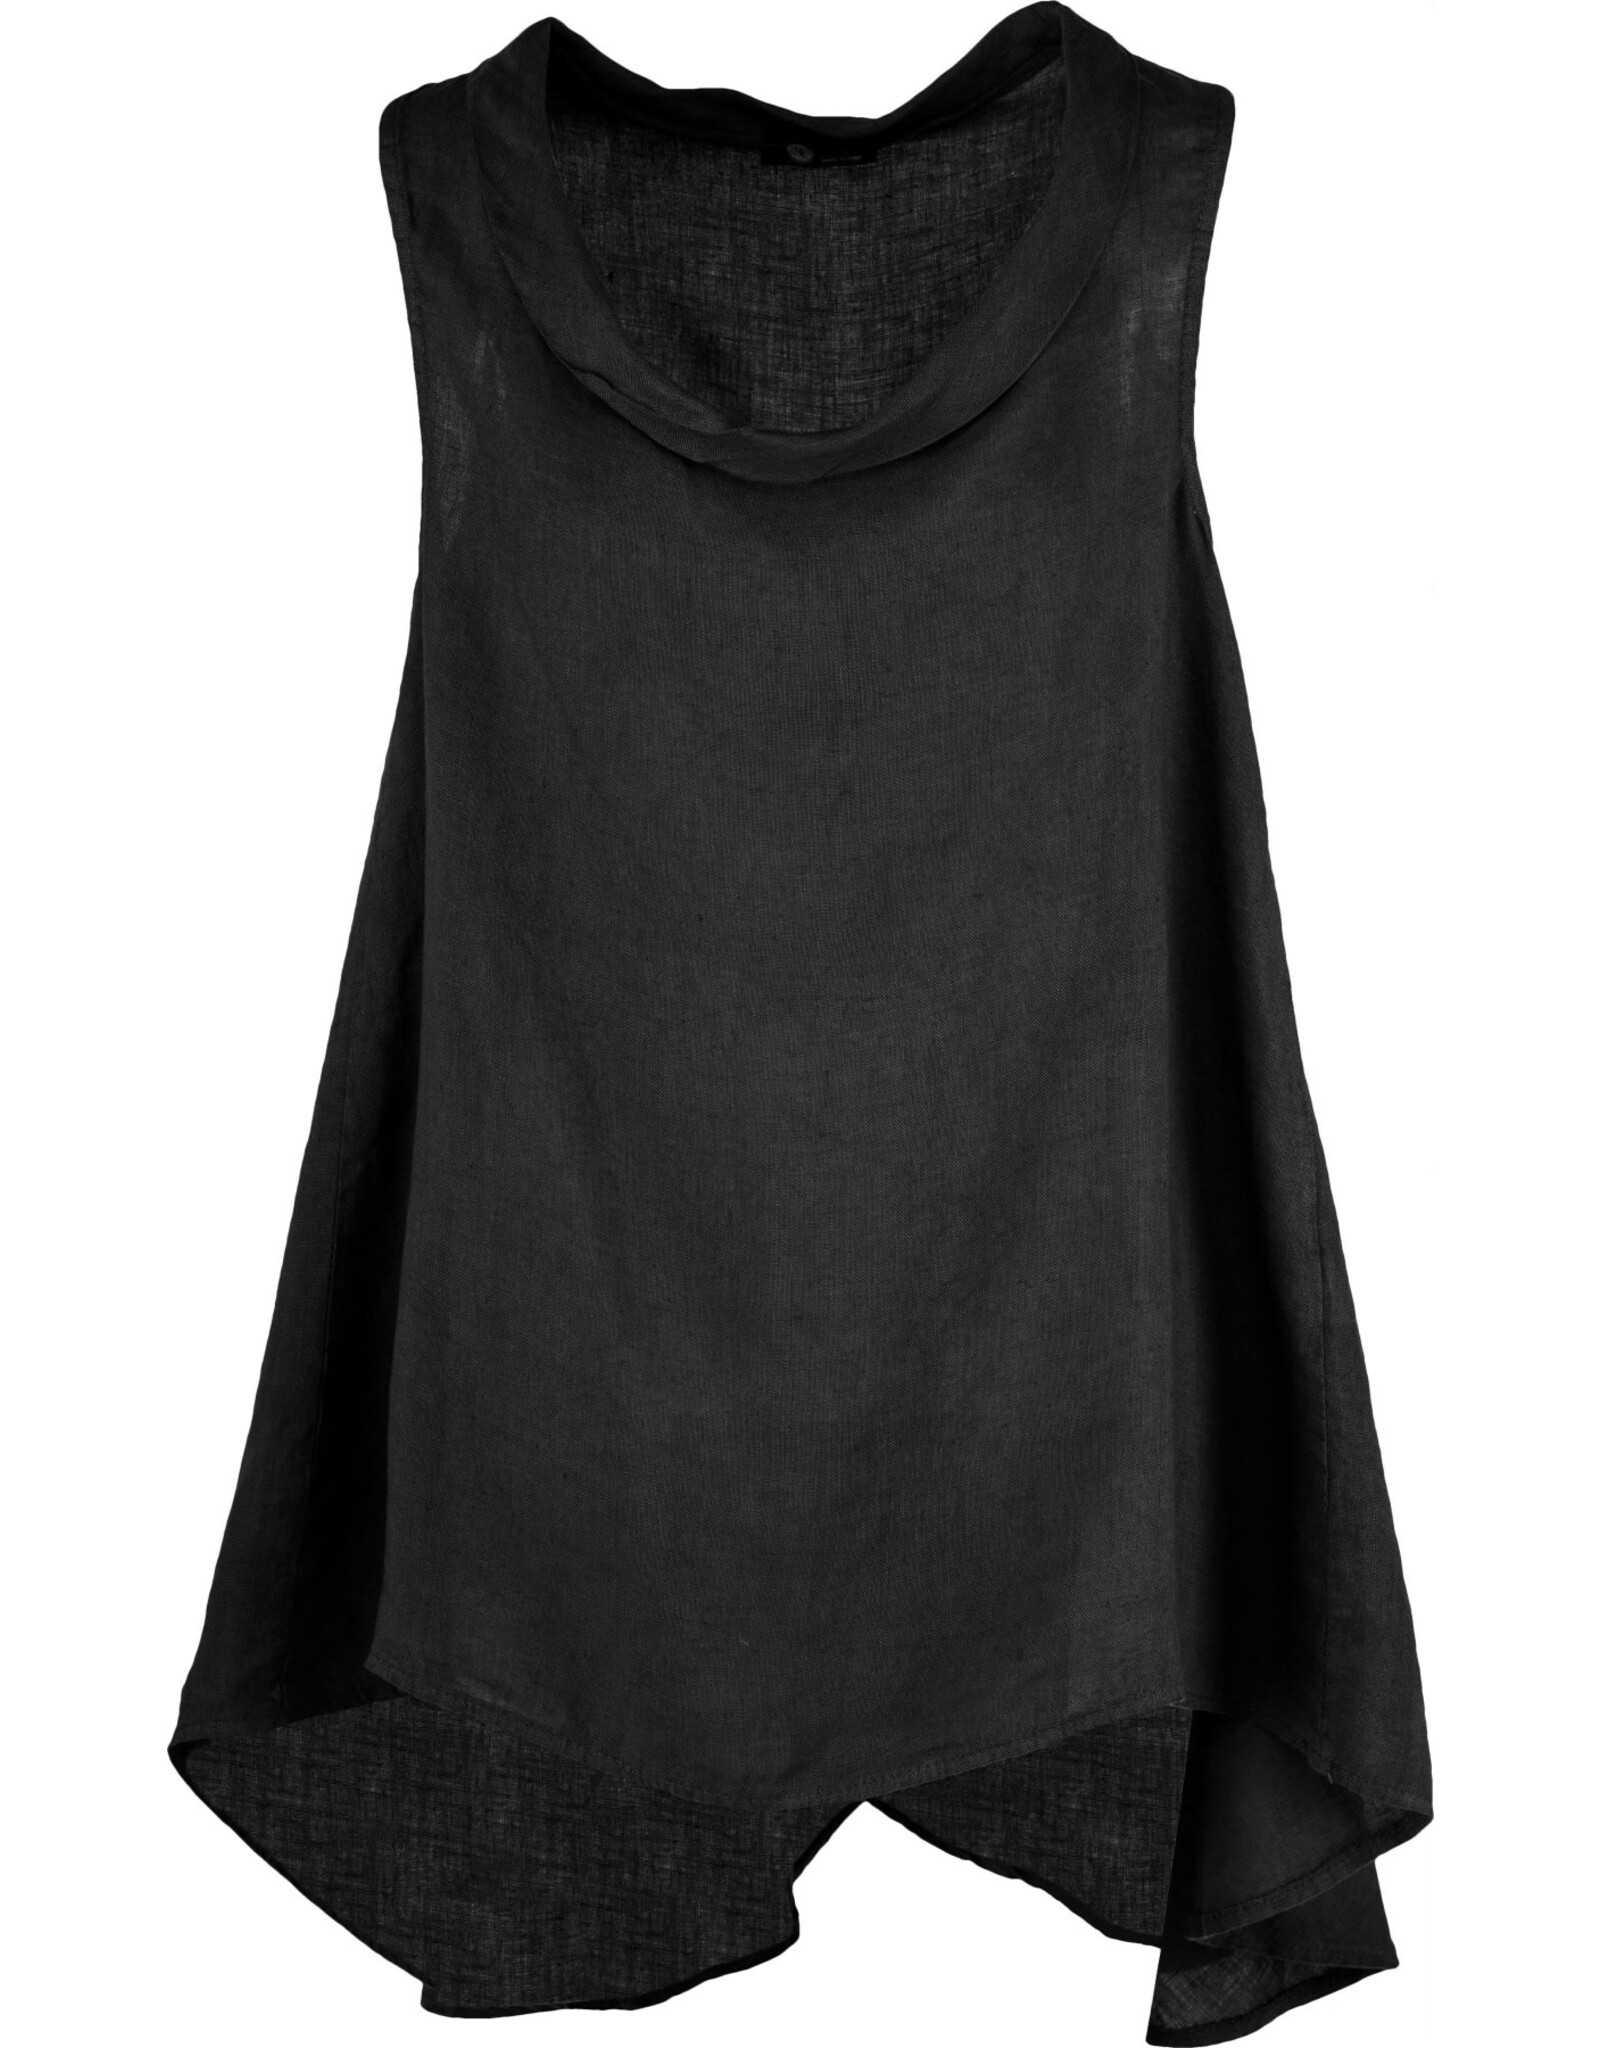 Made in Italy - Sleeveless tunic (Black)